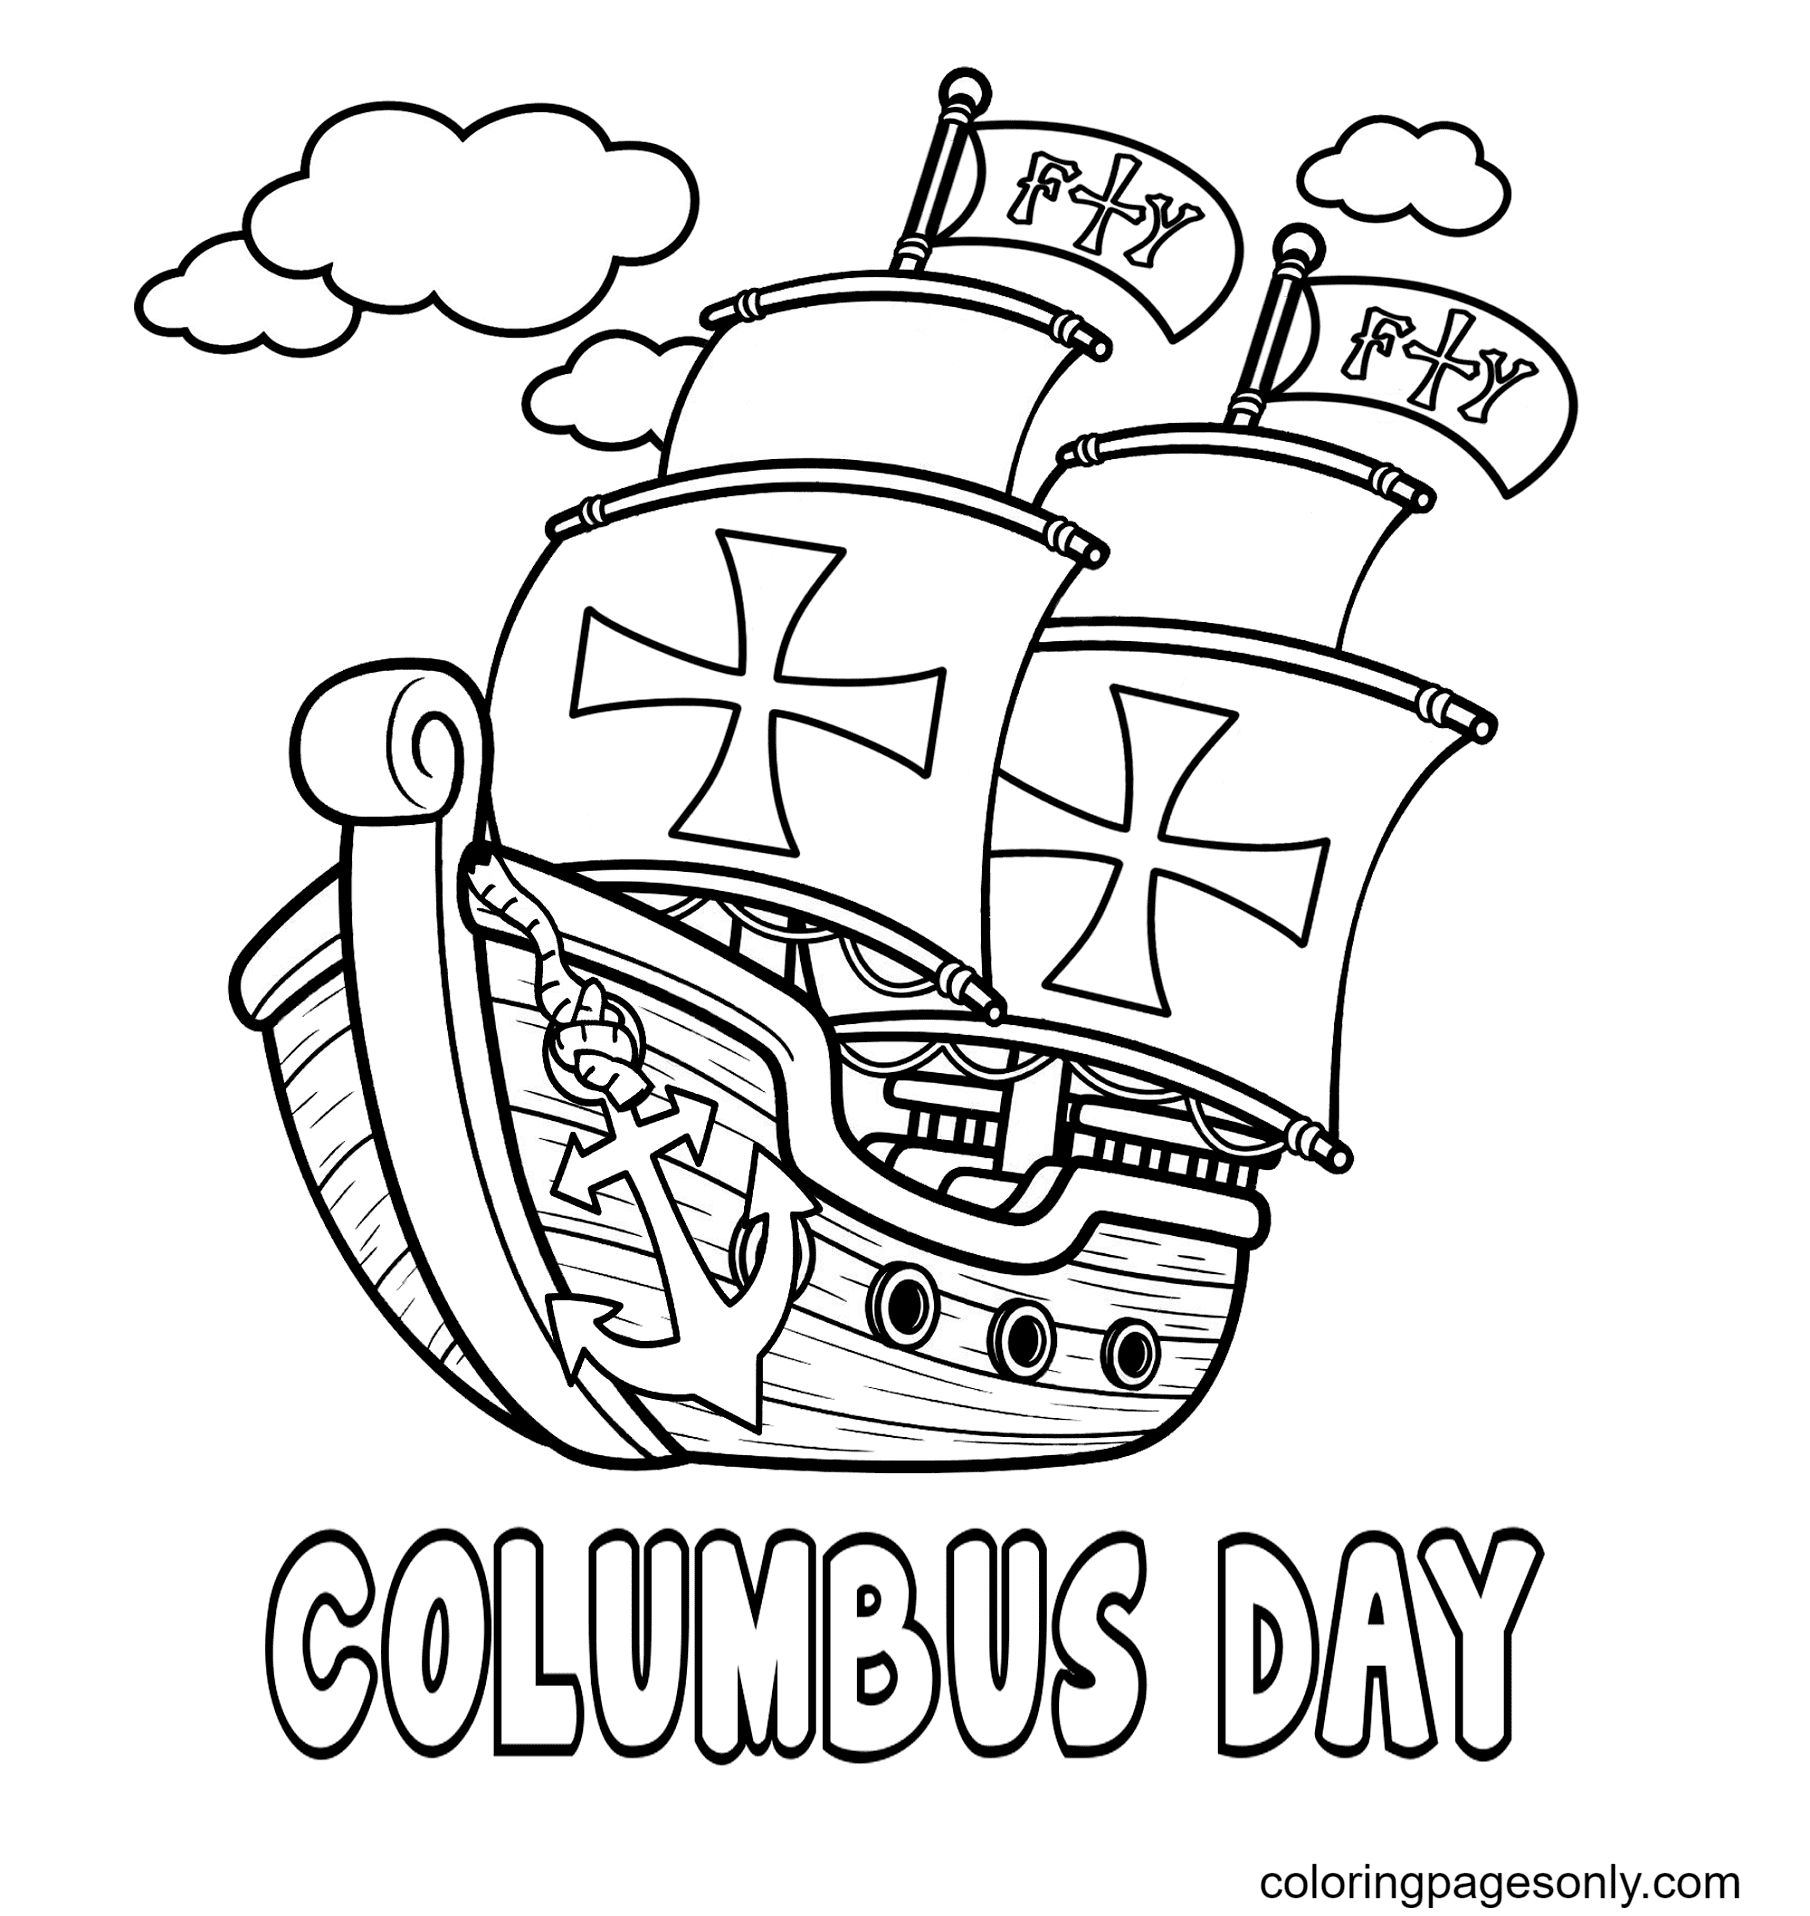 Christophe Colomb imprimable gratuitement de Columbus Day